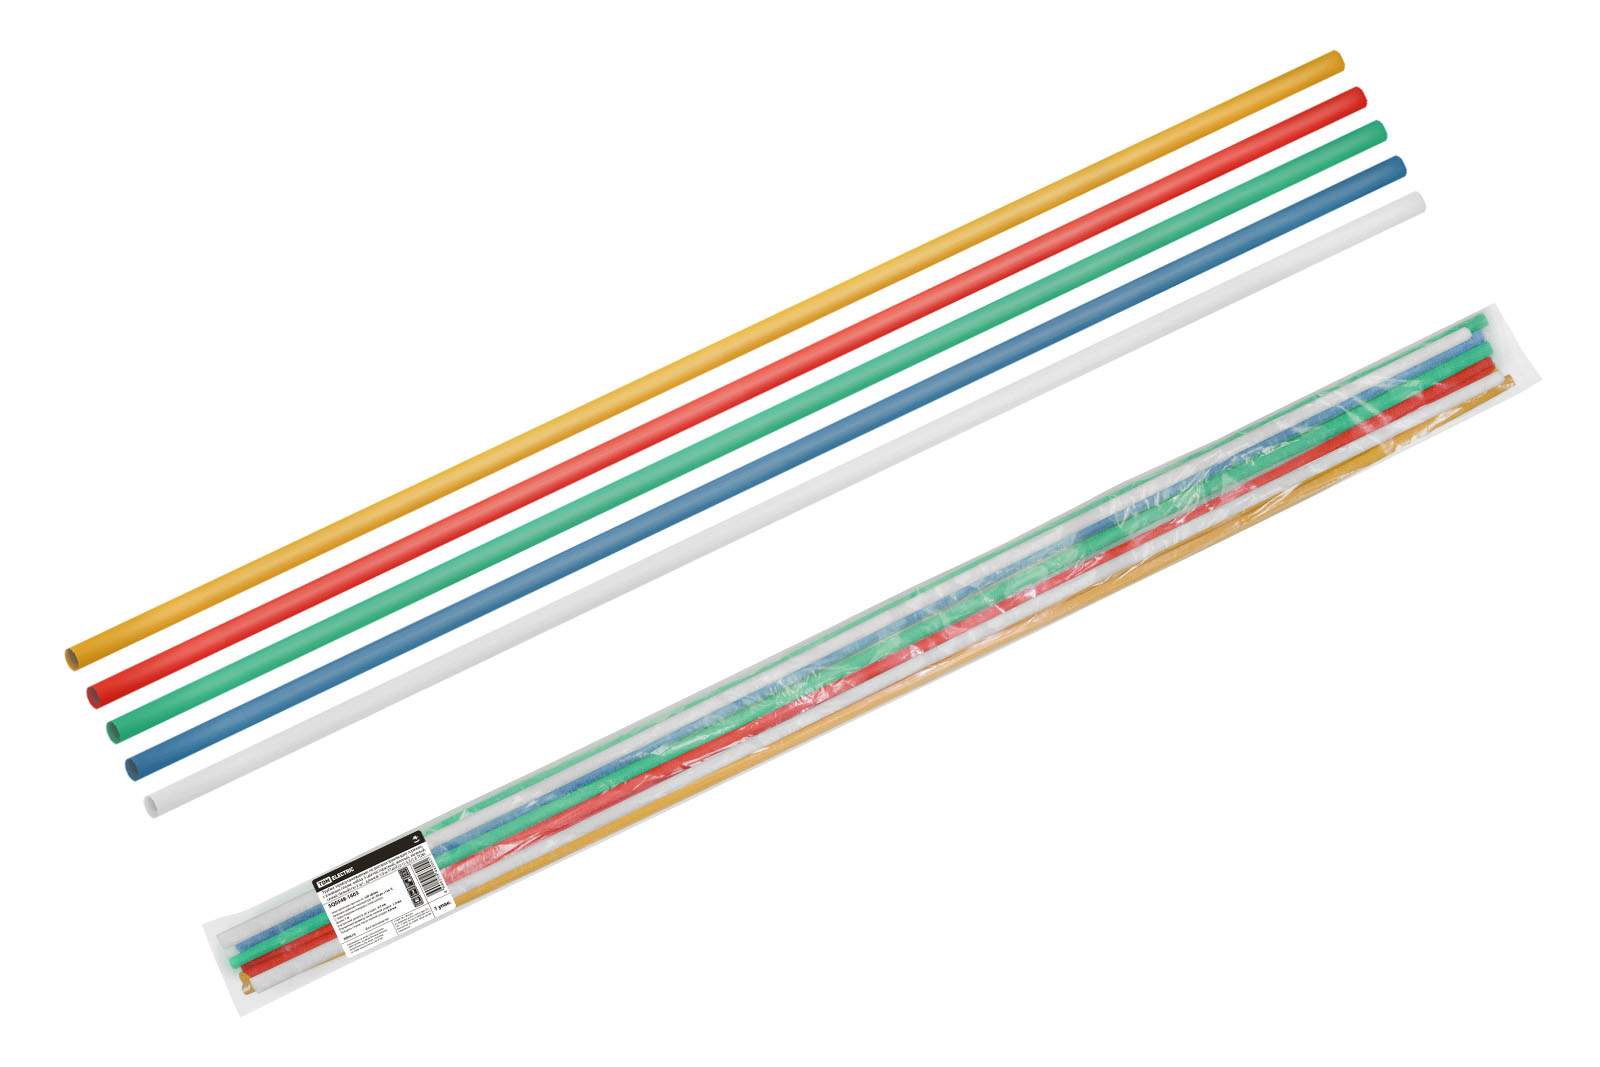 трубки термоусаживаемые, клеевые, набор 5 цветов по 2 шт. тткнг(3:1)-3,2/1,0 tdm от BTSprom.by